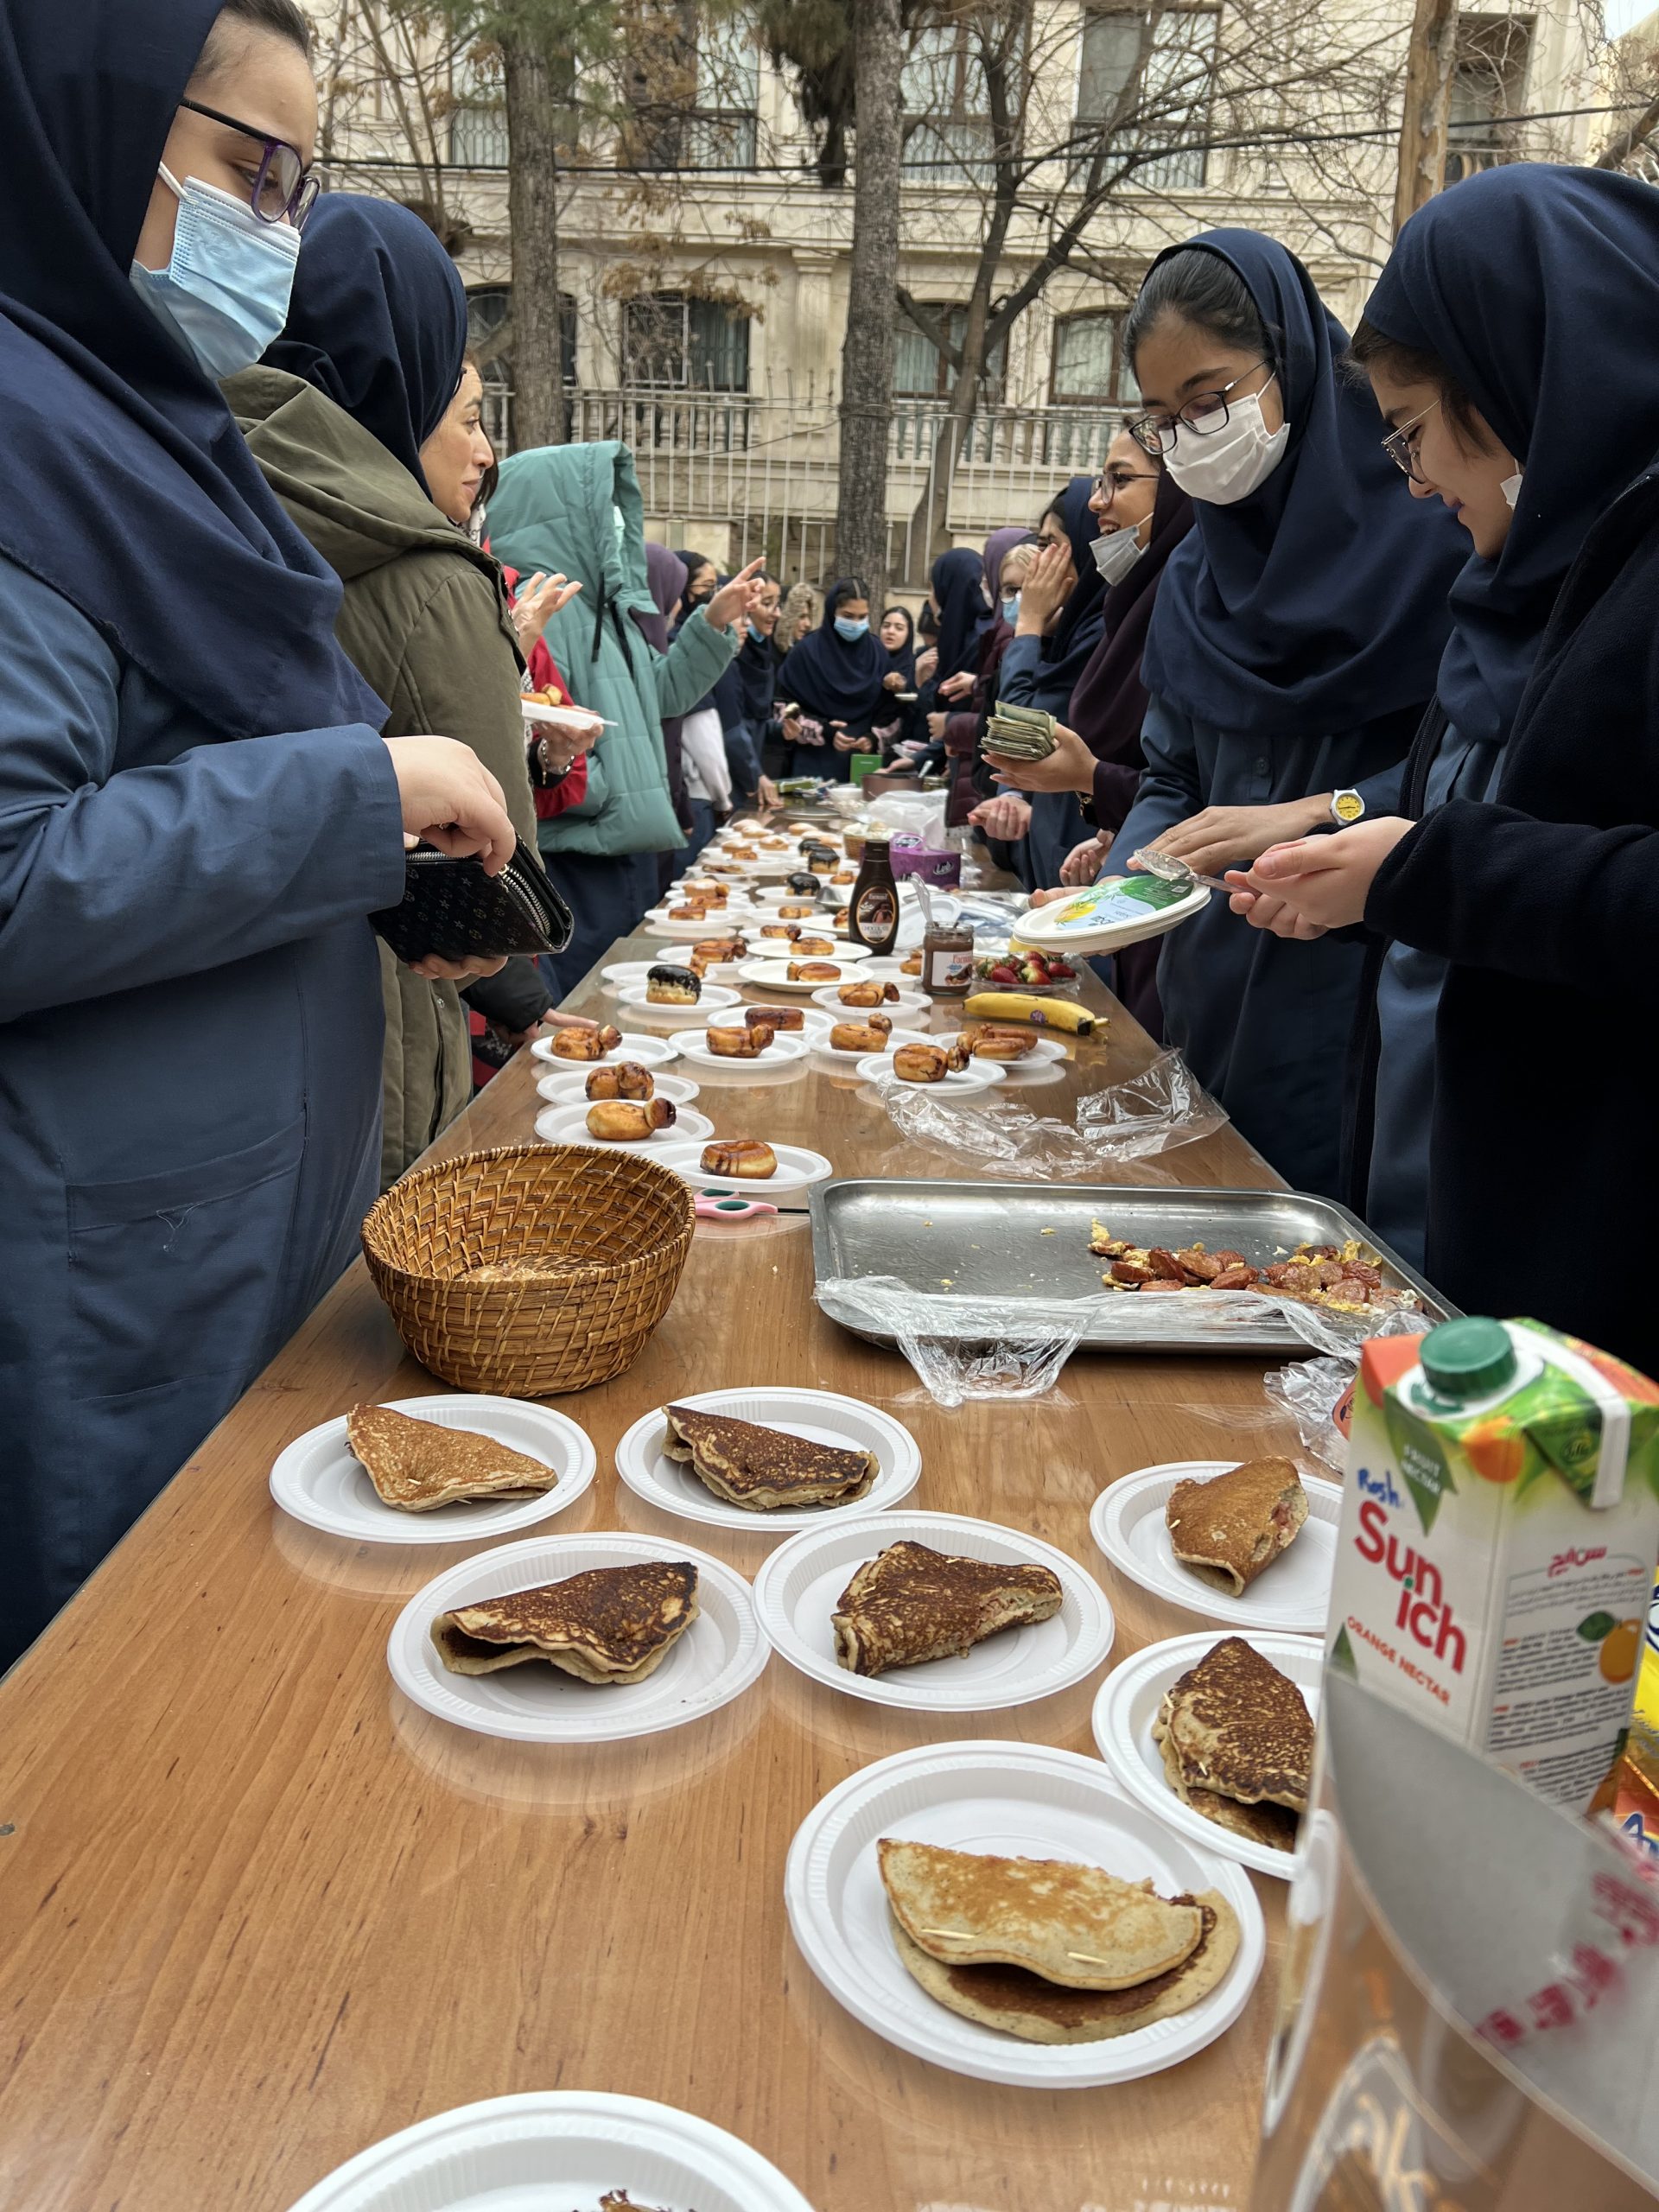 جشنواره غذا (بازارچه خیریه)